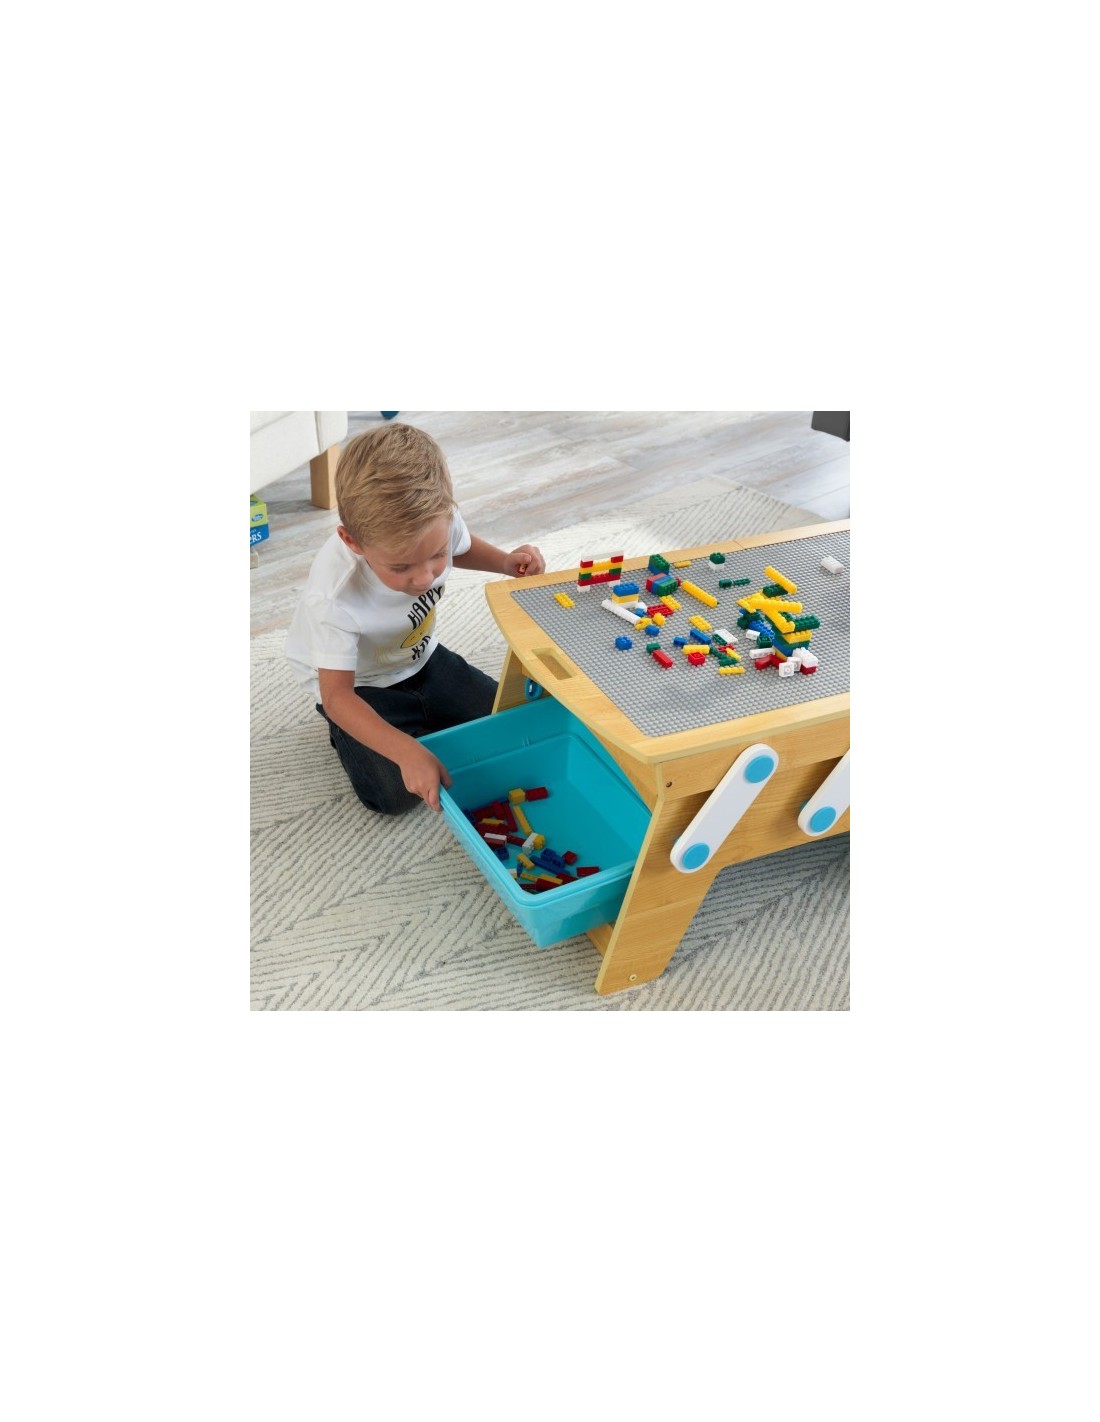 KidKraft Table Enfant Play N Store avec 200 Briques de